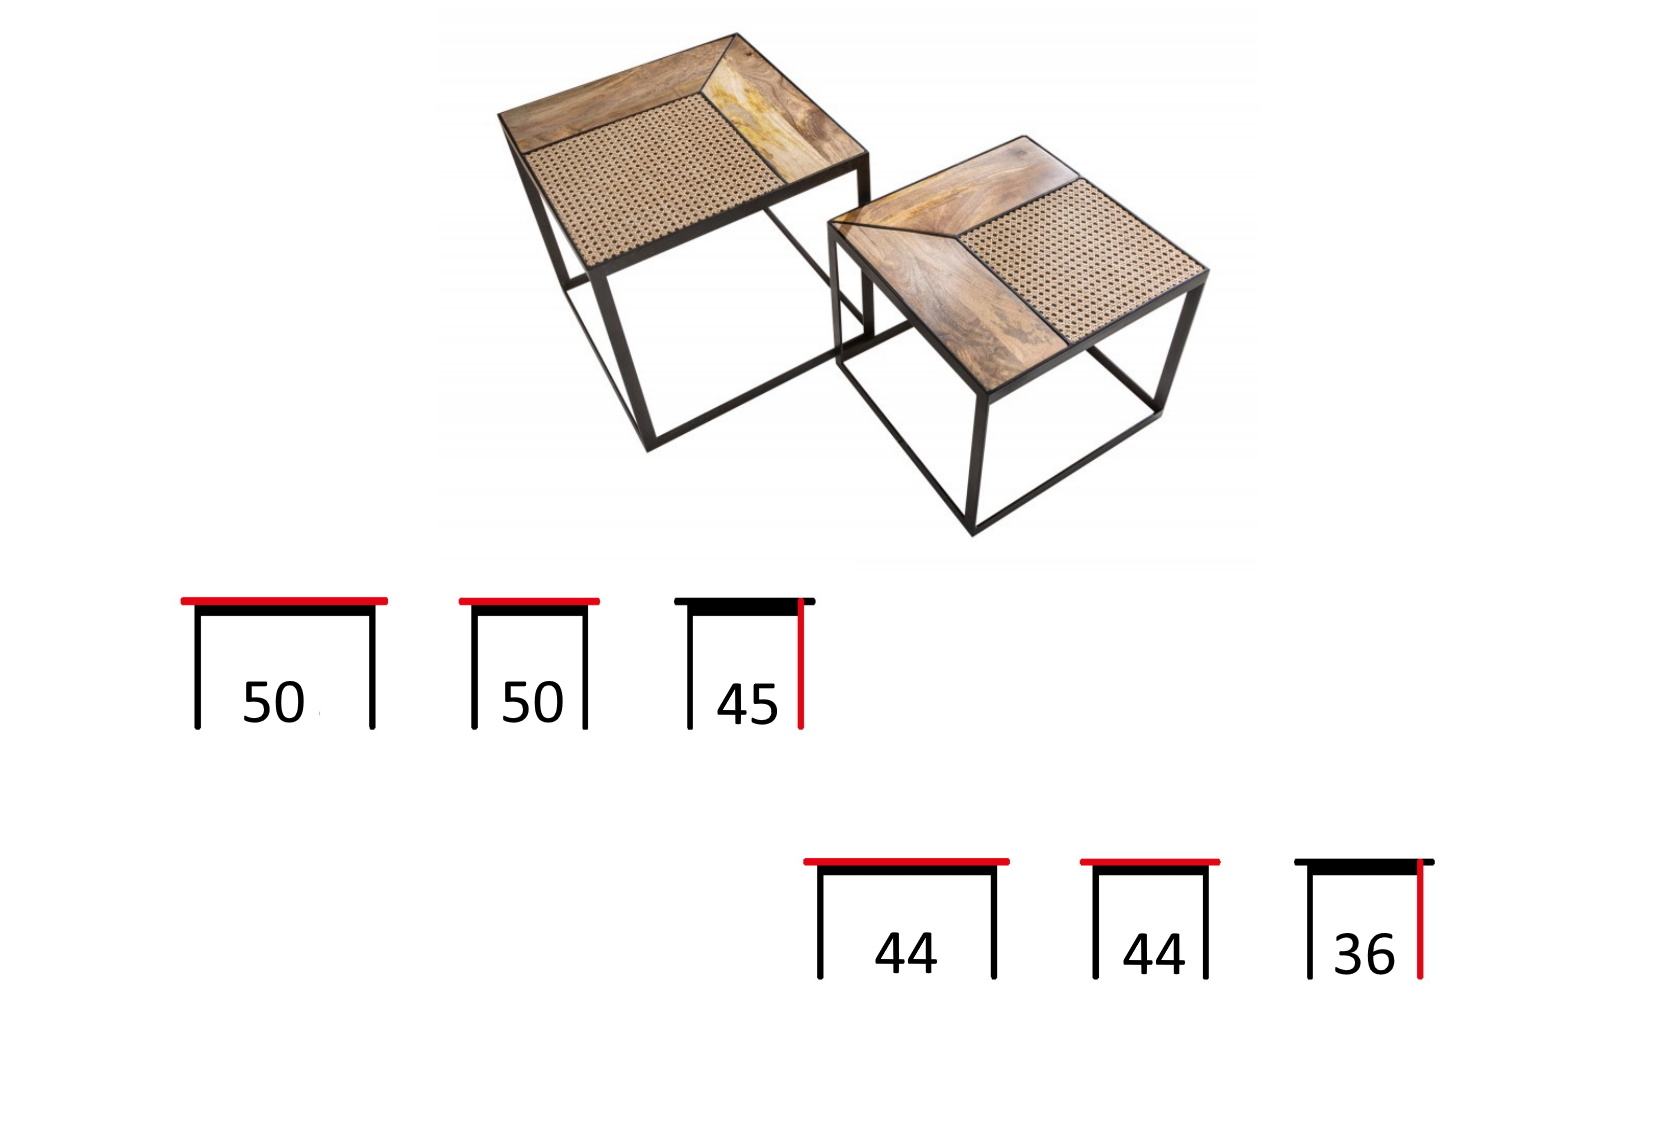 zestaw dwóch stolików z drewna i rattanu vienna, wymiary stolików